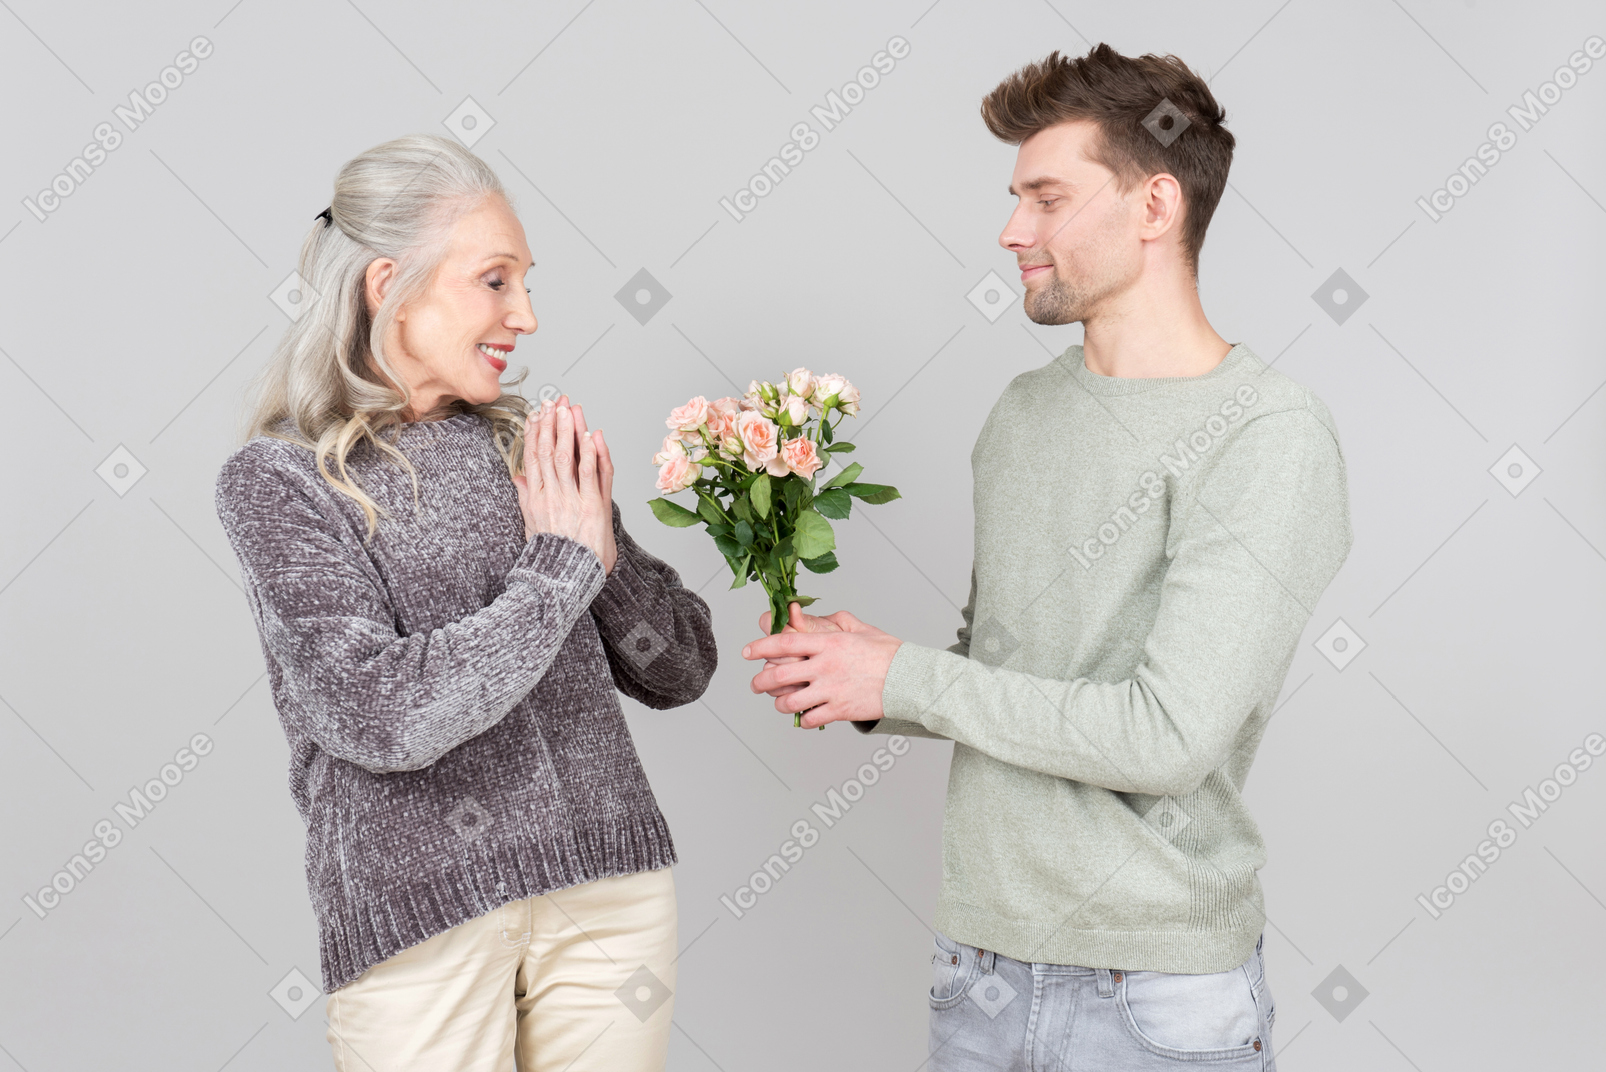 C'est si gentil de m'apporter des fleurs